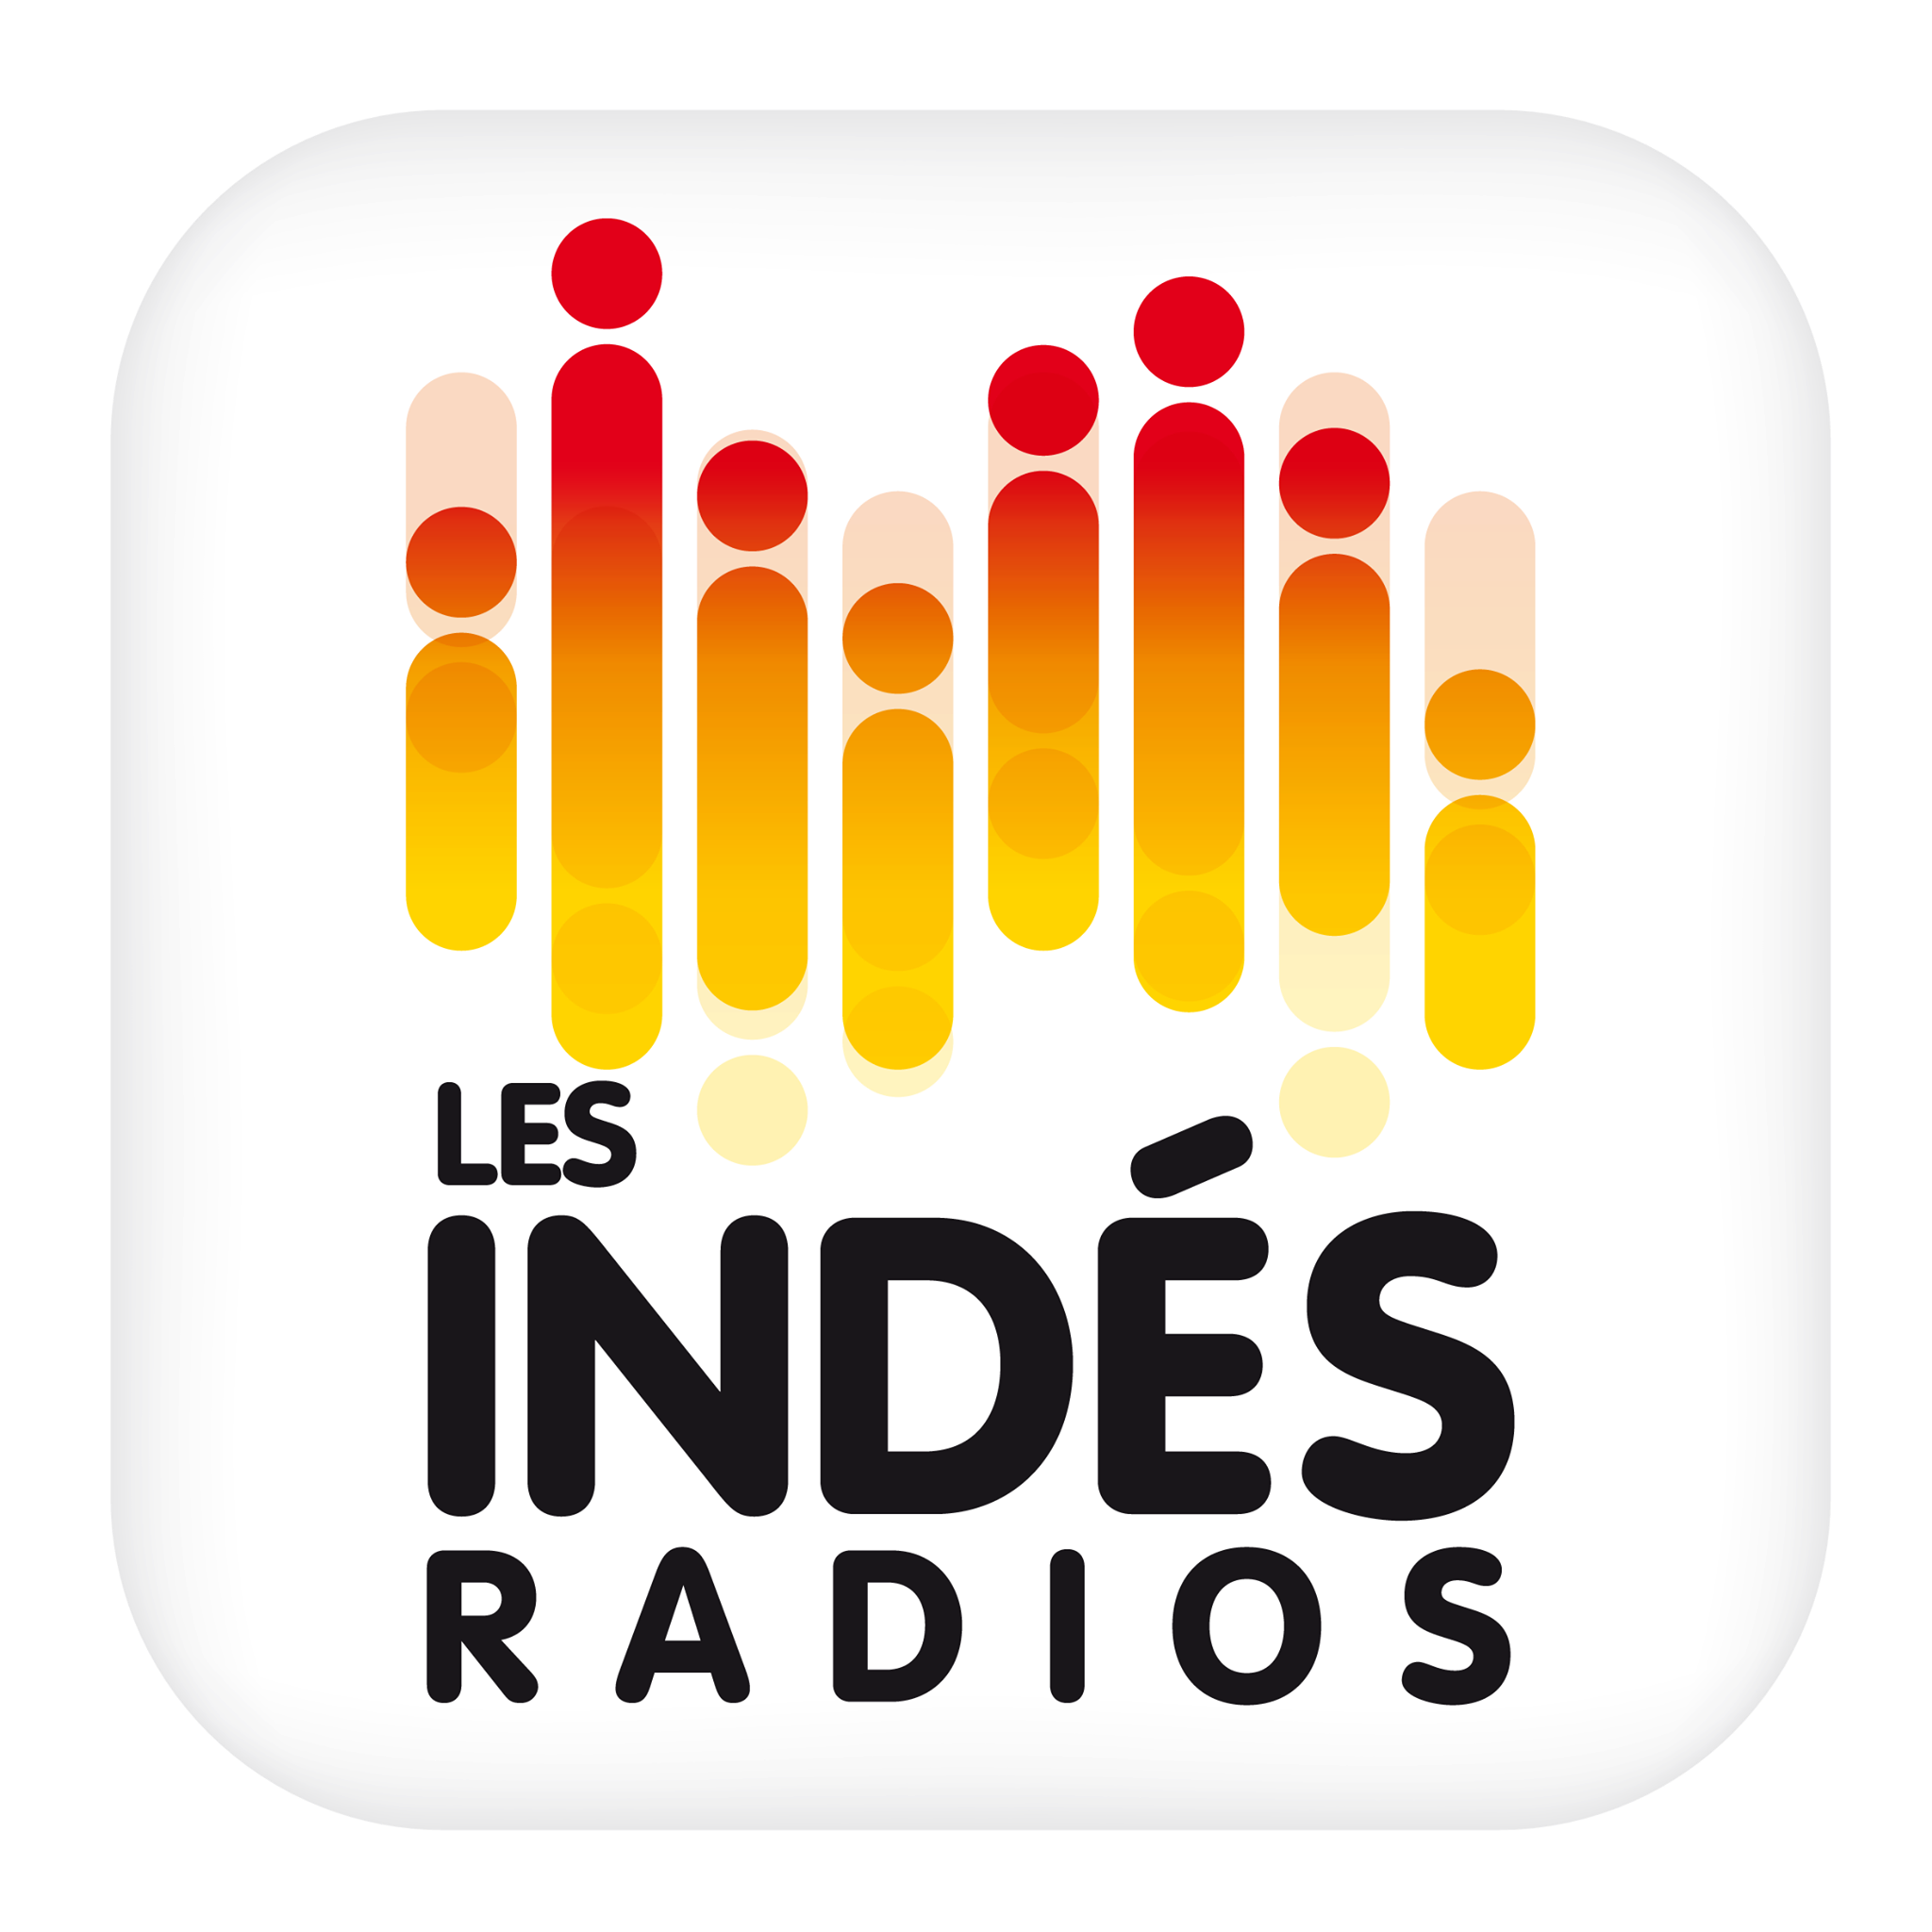 Les Indés Radios : 5e groupe de radios le plus écouté à l'ACPM